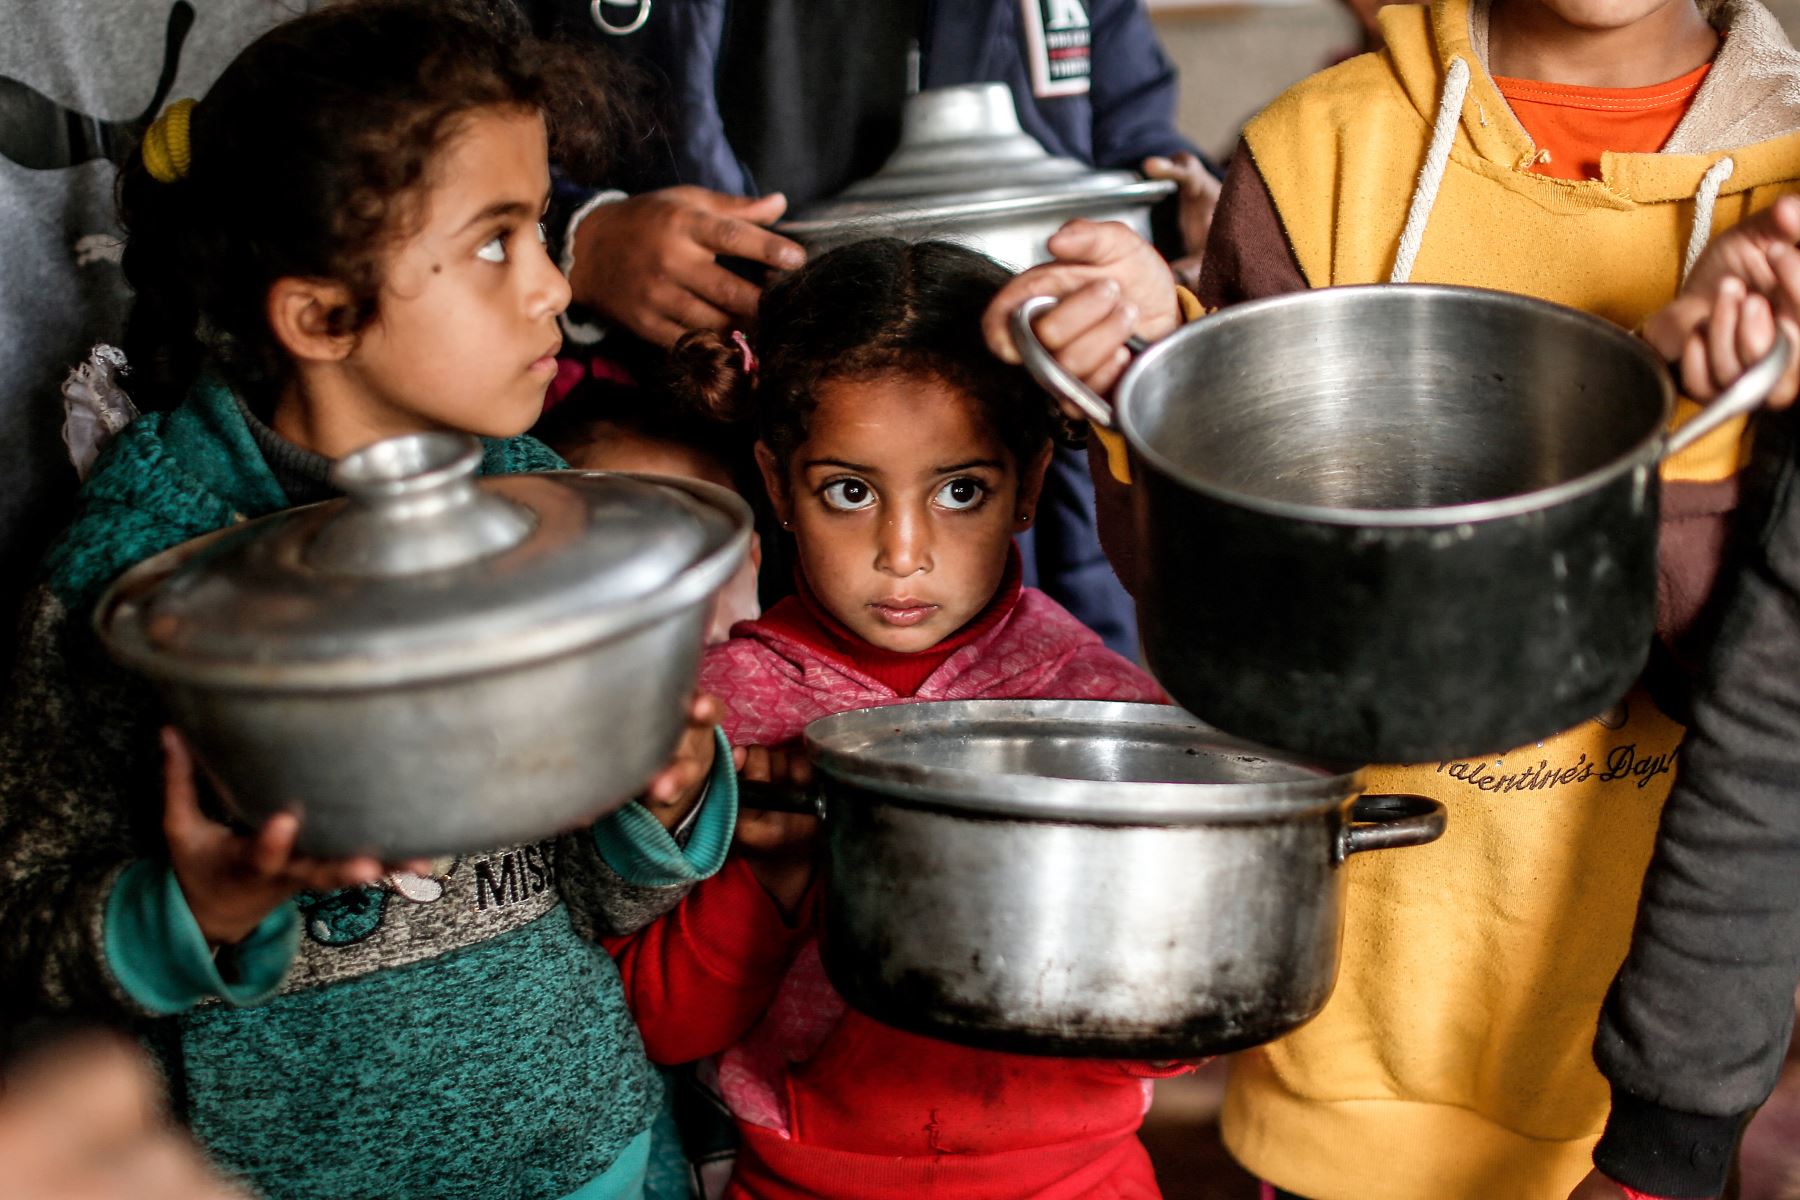 Niños palestinos cargan ollas mientras esperan recibir una comida preparada con ingredientes obtenidos de donantes que desean ayudar a familias necesitadas, en un barrio empobrecido de la ciudad de Gaza. Foto: AFP